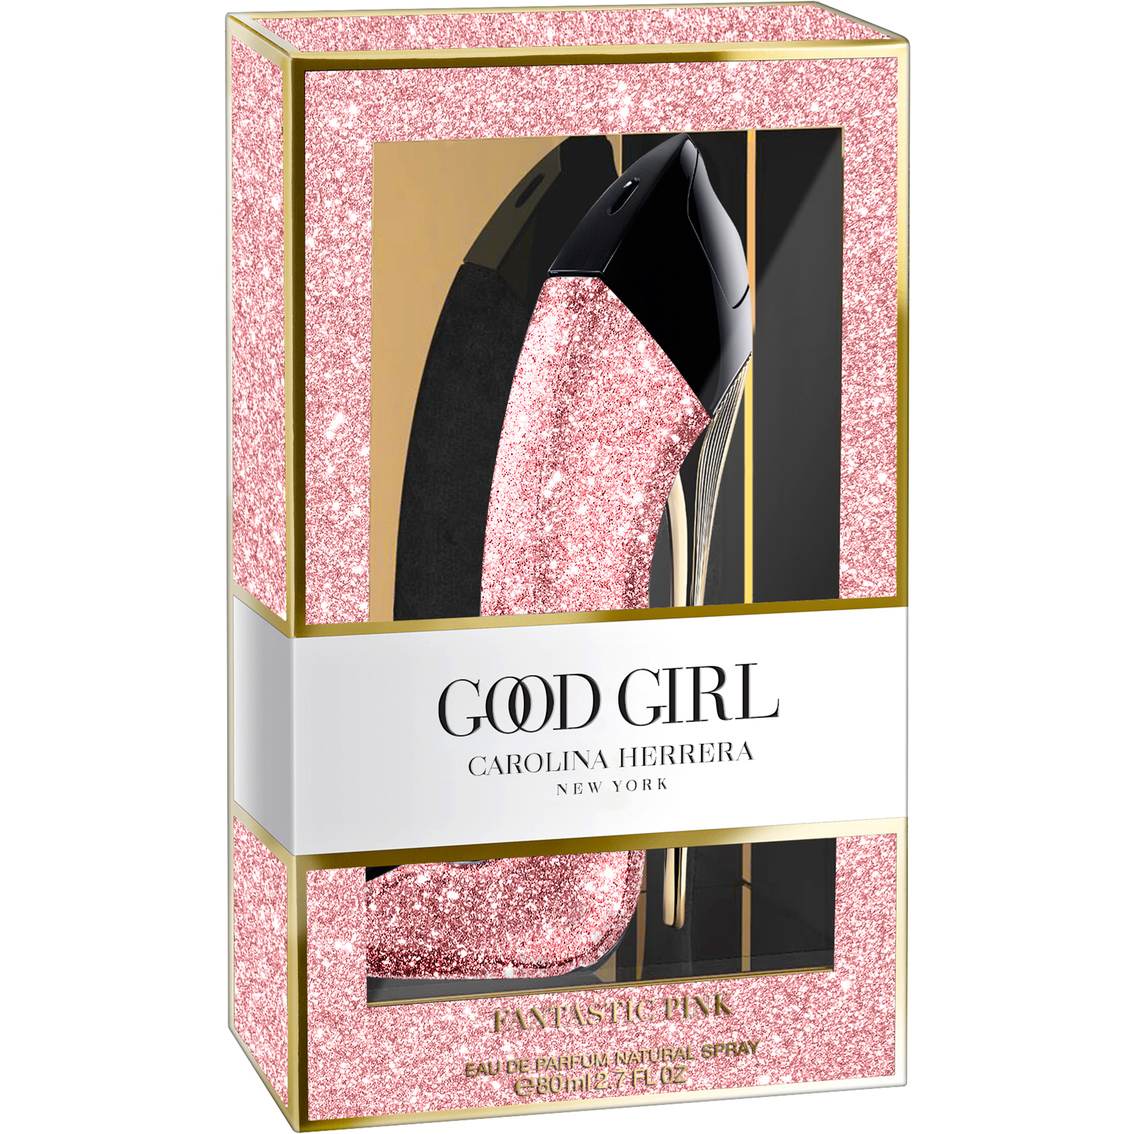 Good Girl Fantastic Pink 2.7 oz EDP for women